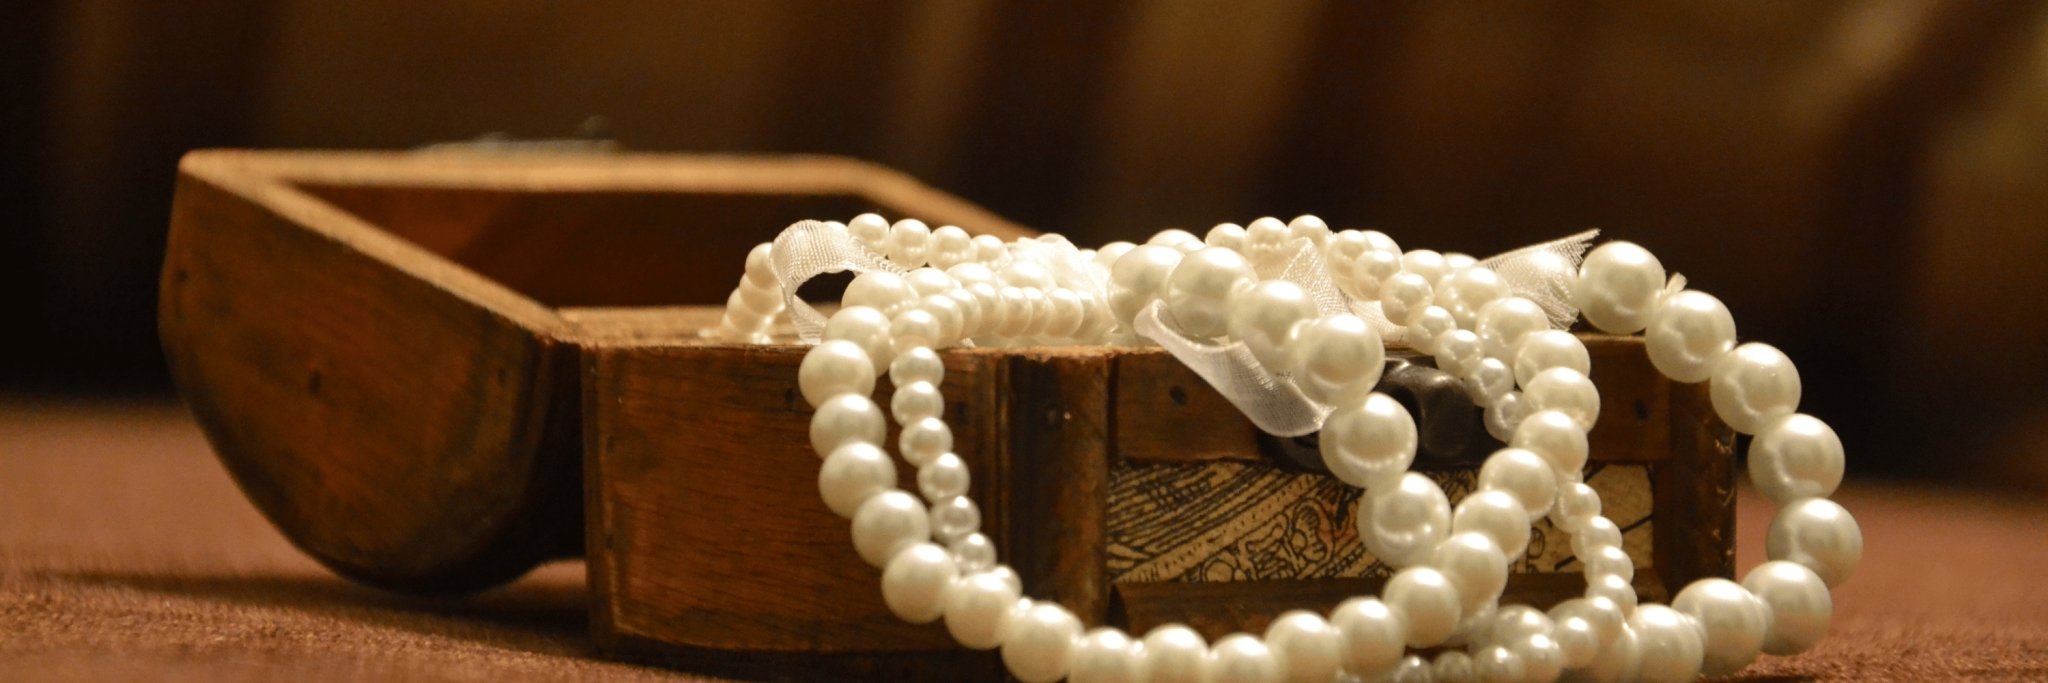 Boîte en bois avec bijoux de perles